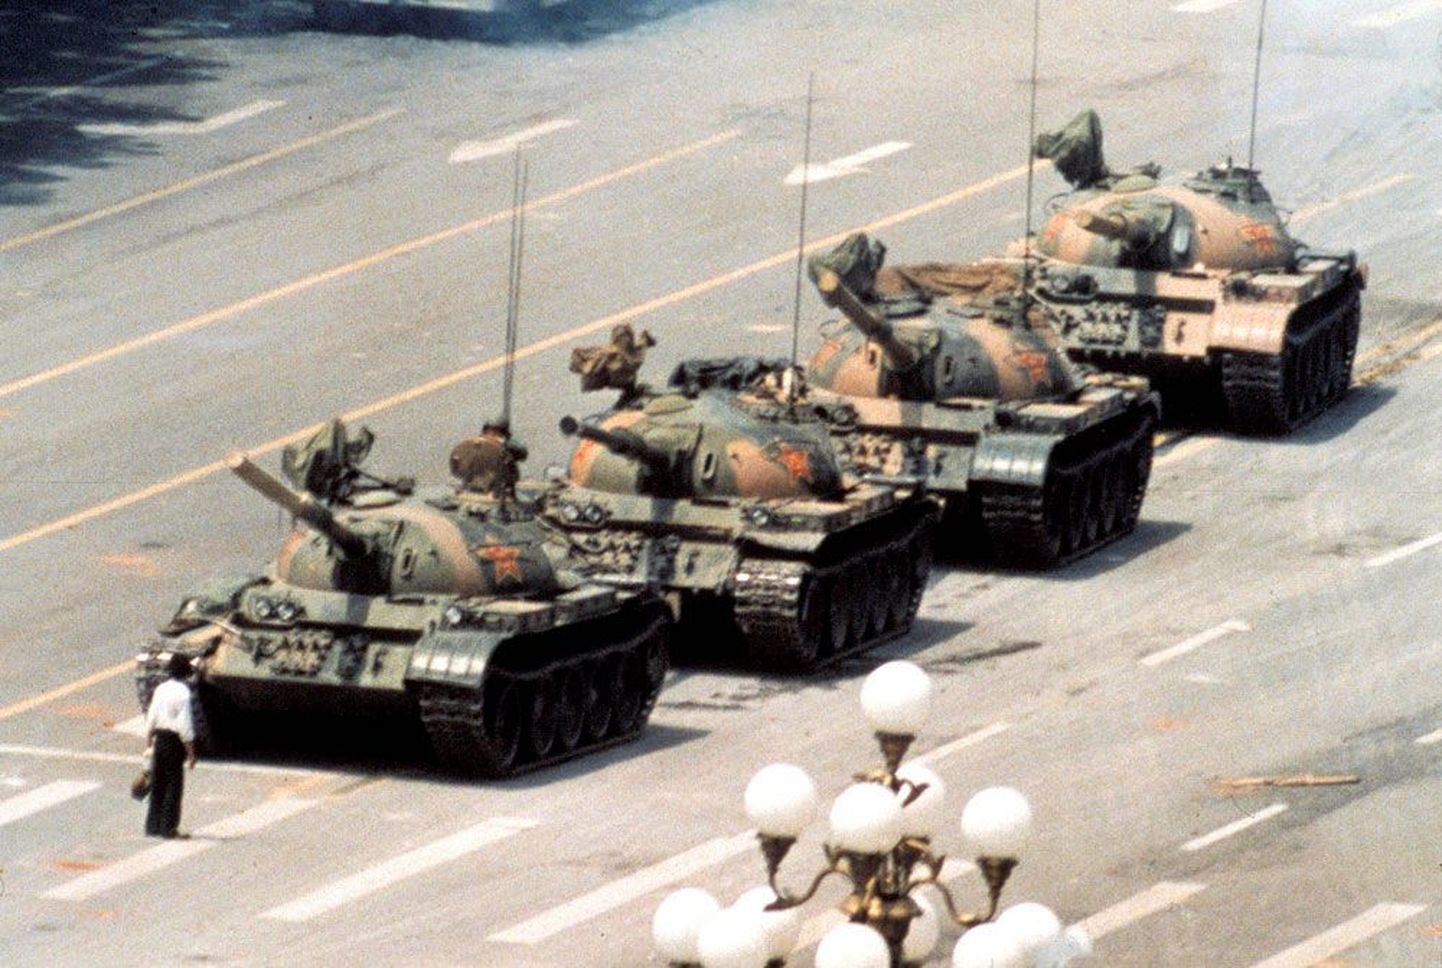 Tiananmeni meeleavalduste kuulsaimal, 5. juunil 1989 tehtud fotol on tundmatu valges särgis mees astunud vastu tankikolonnile. Kolonn peatus ja sõjaväelased viisid mehe minema. Foto on Hiinas endiselt keelatud ning mehe saatus siiani ebaselge. Mõned väidavad, et ta hukati, teised, et ta pages Taiwani.